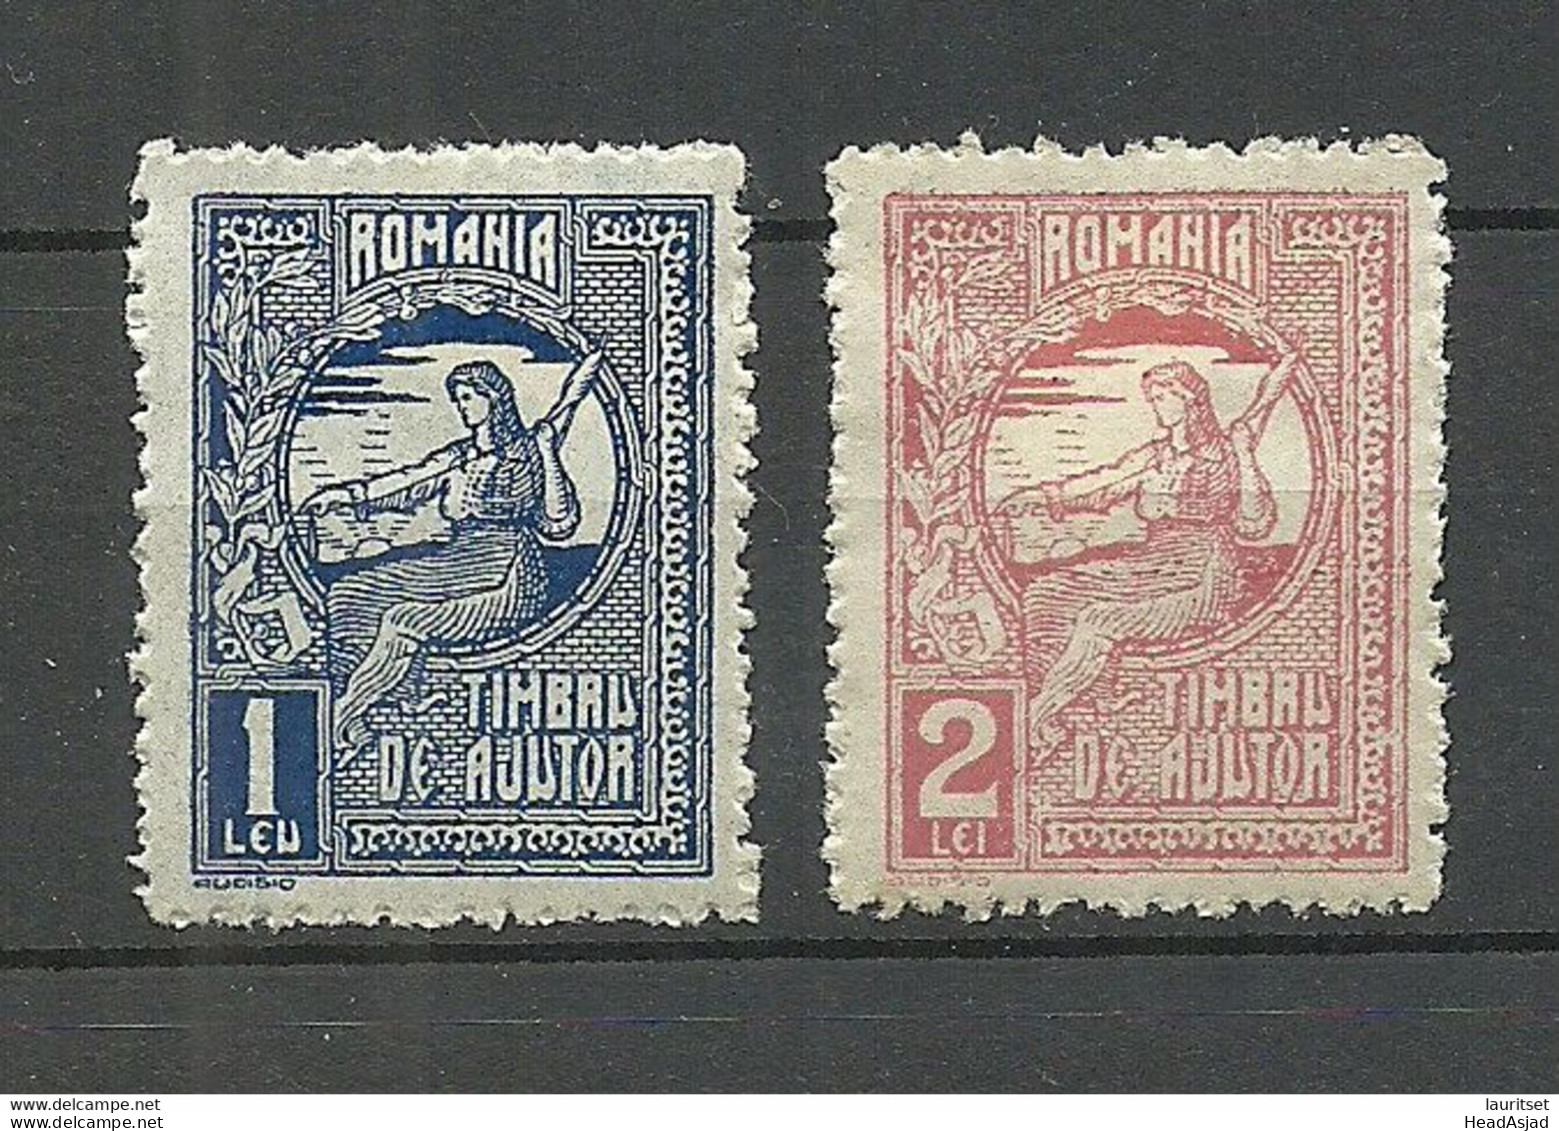 ROMANIA Rumänien Timbru De Ajutor 1 & 2 Leu * - Revenue Stamps